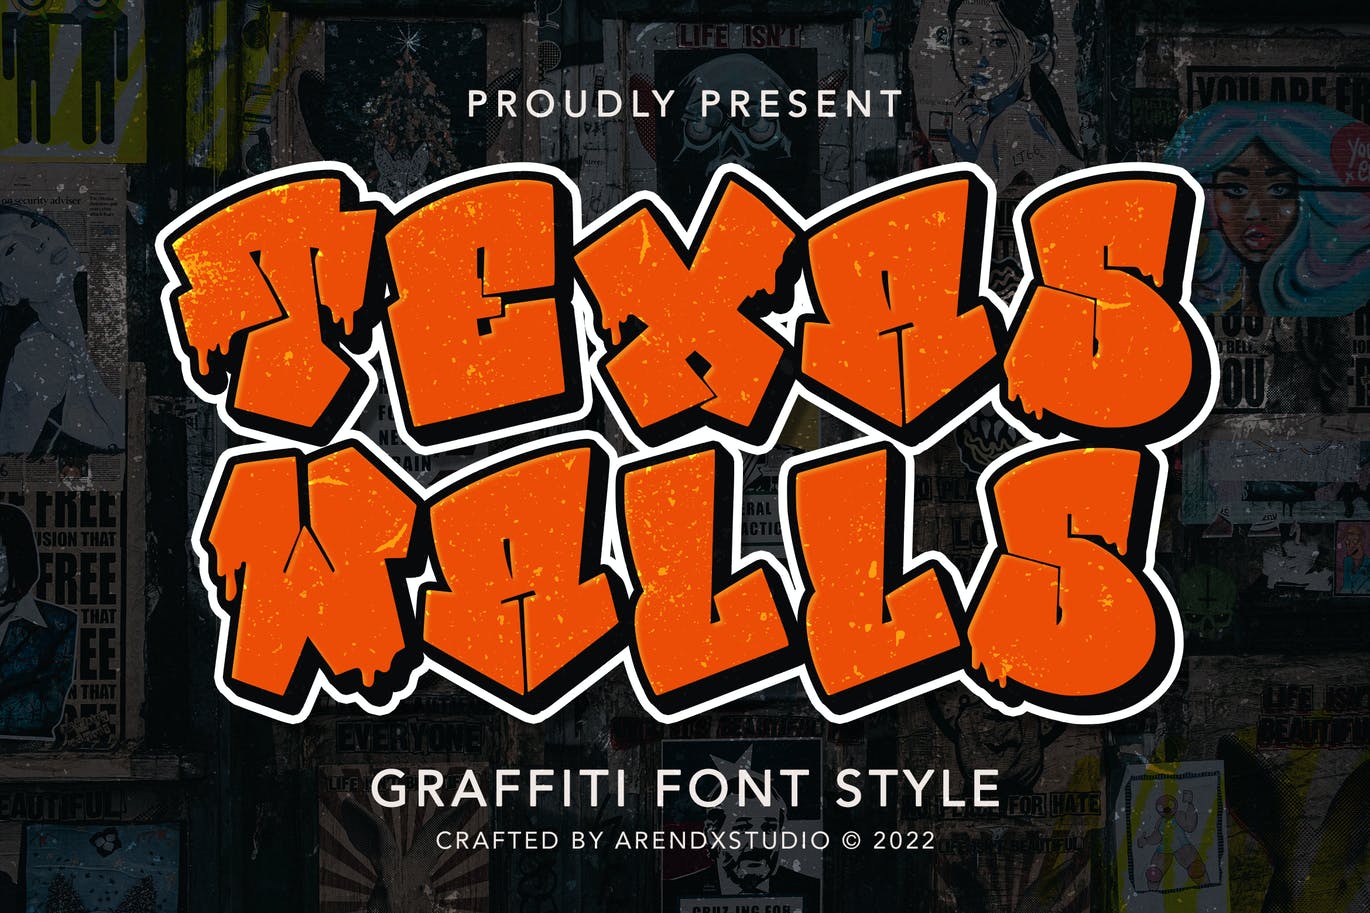 街头艺术涂鸦风格字体 Texas Walls – Graffiti Font Style 设计素材 第1张